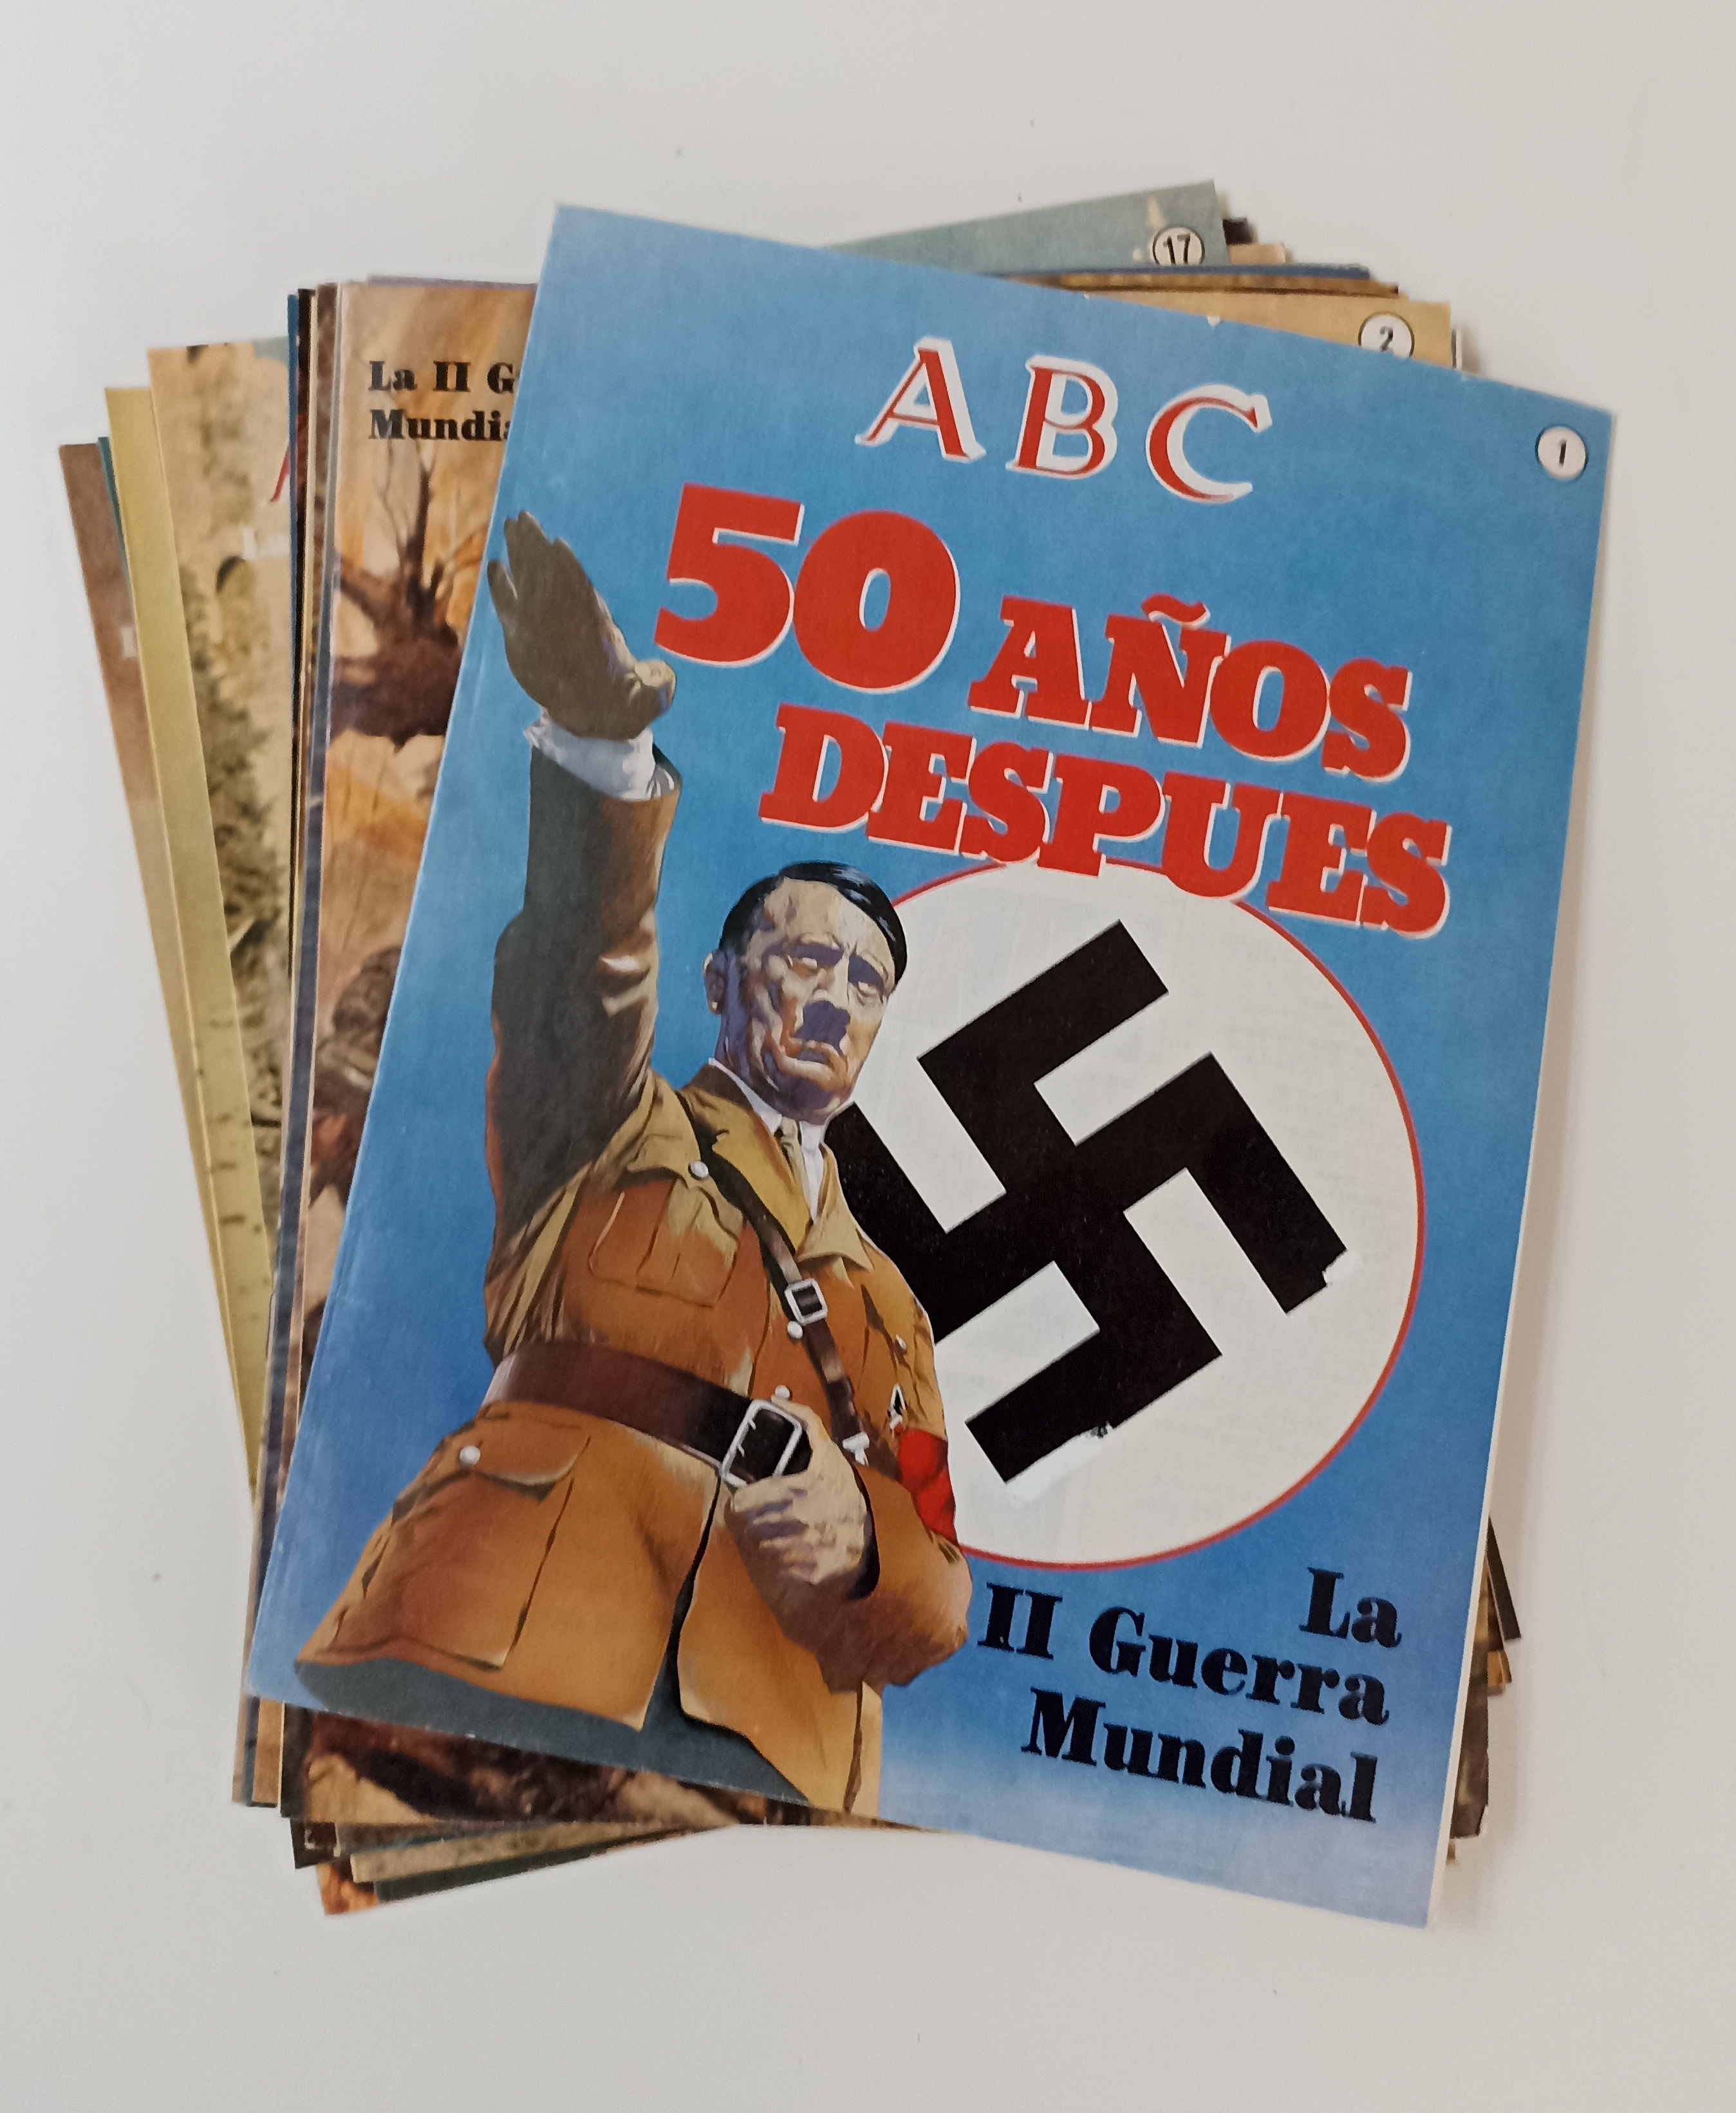 ABC. La II Guerra Mundial 50 años después. La colección consta de 102 fascículos (faltando 5)